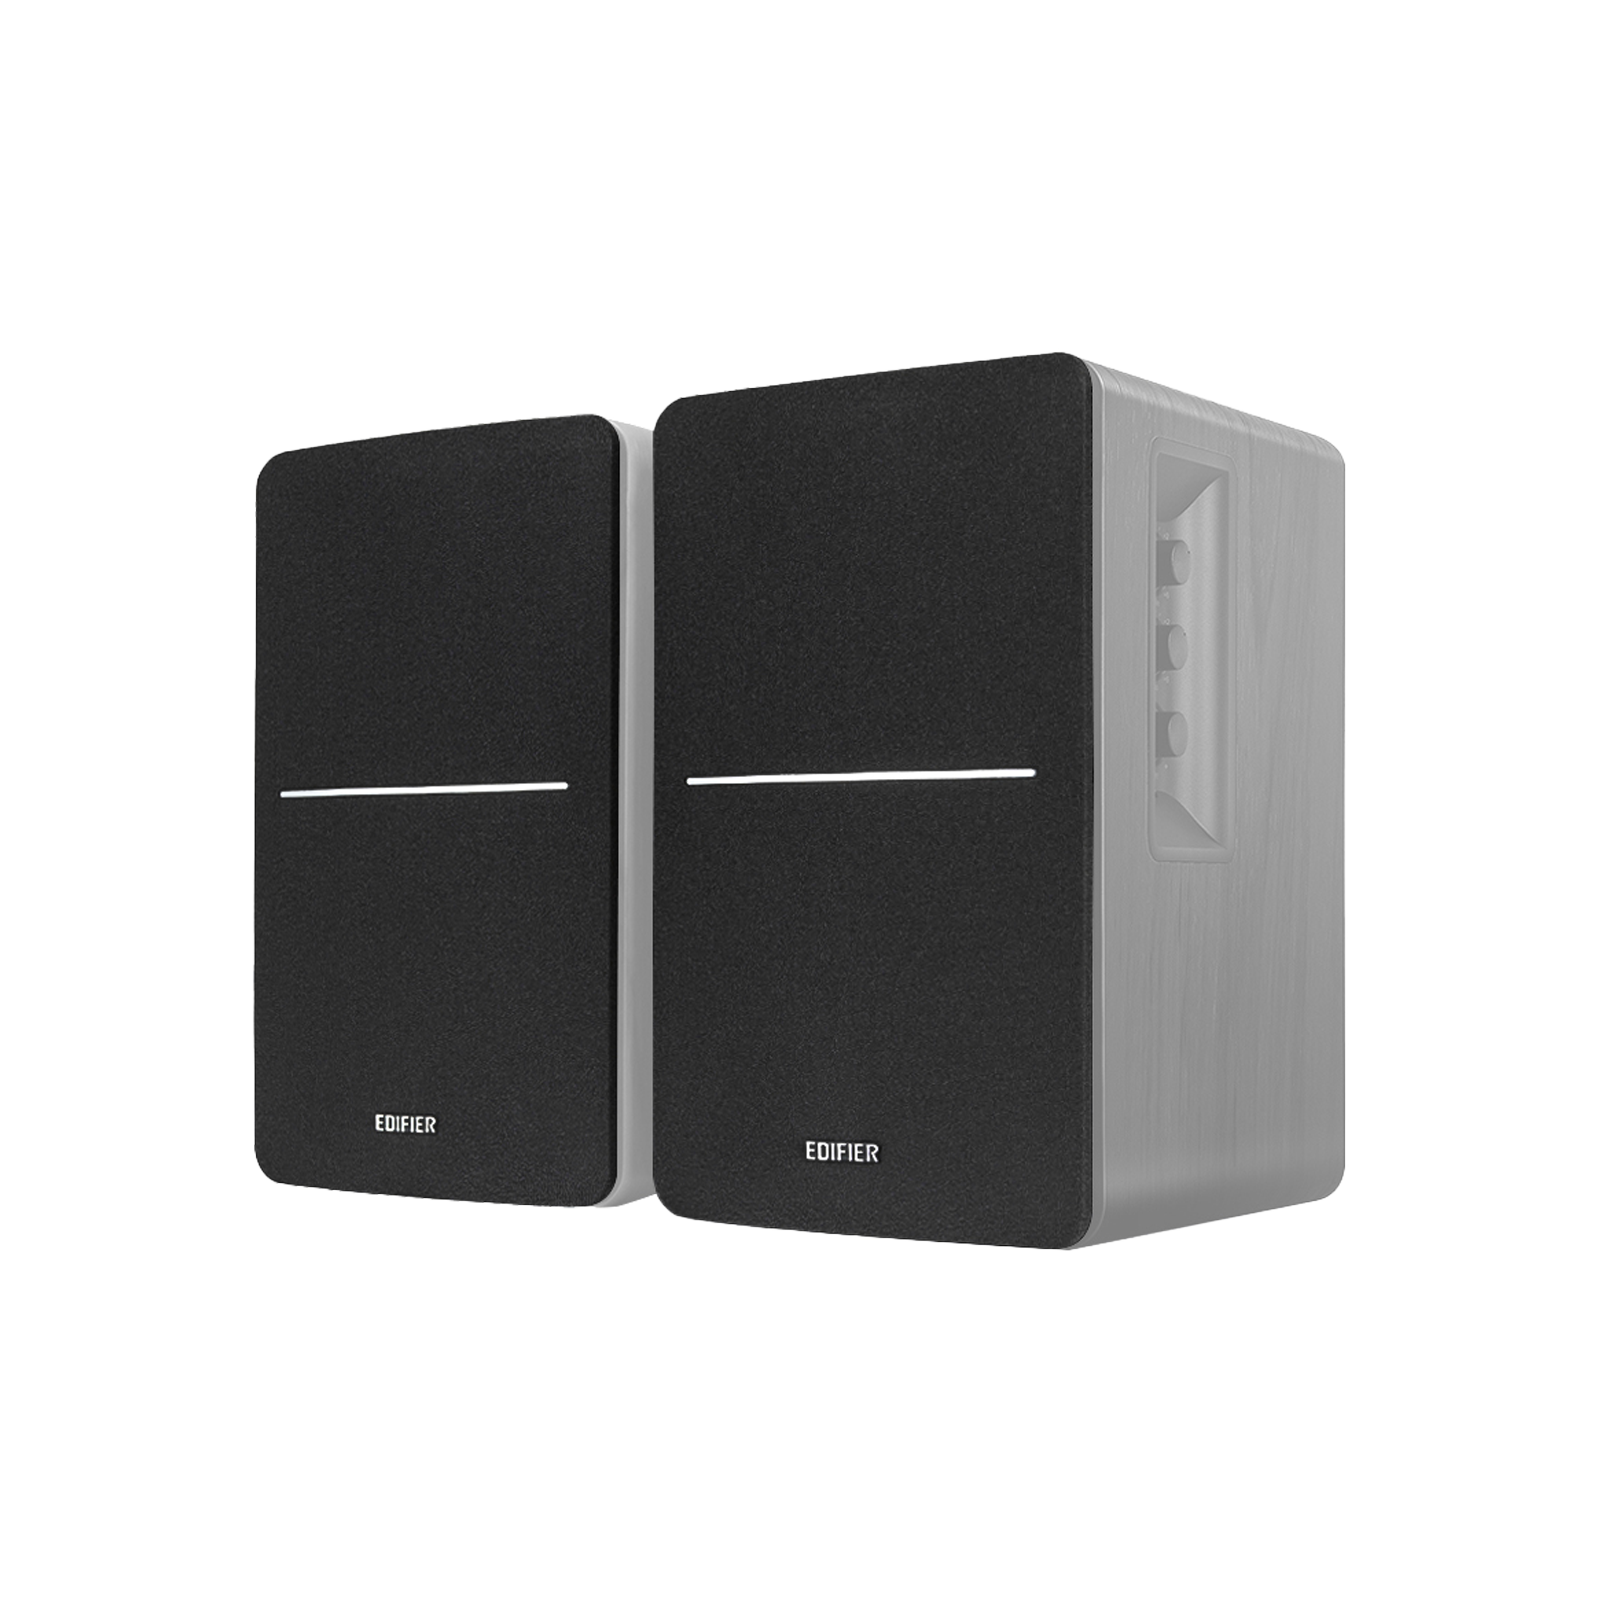 Grilles - R1280DBs Black- Pair Compatible with R1280DBs speakers in black